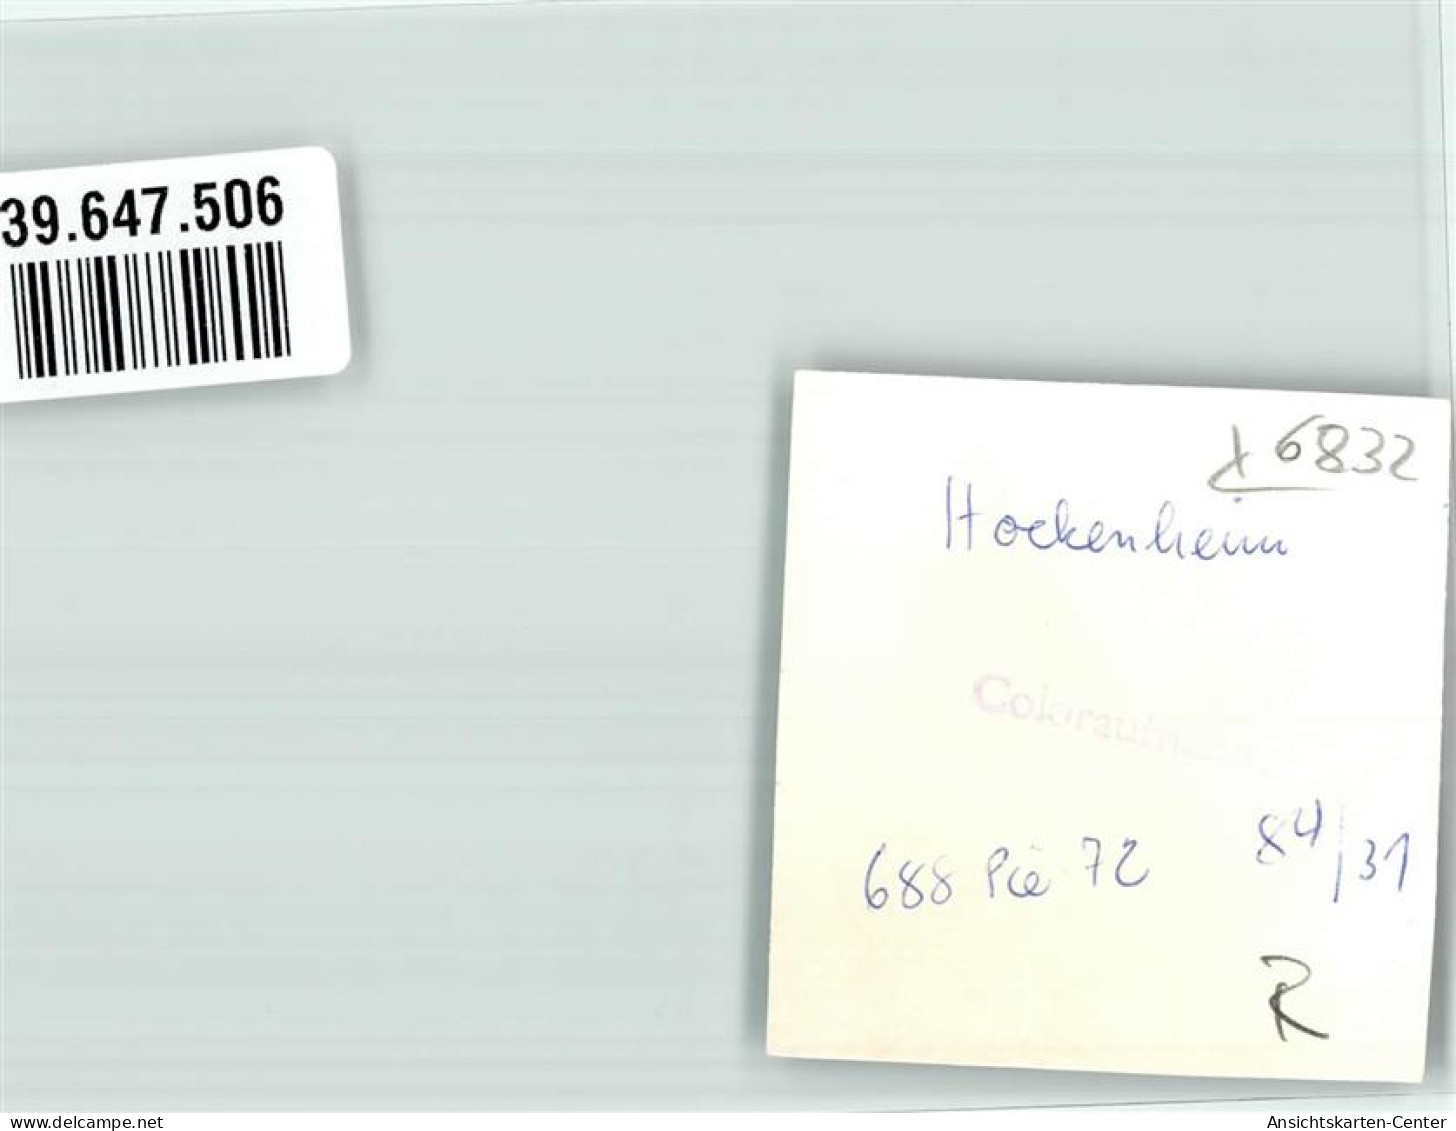 39647506 - Hockenheim - Hockenheim